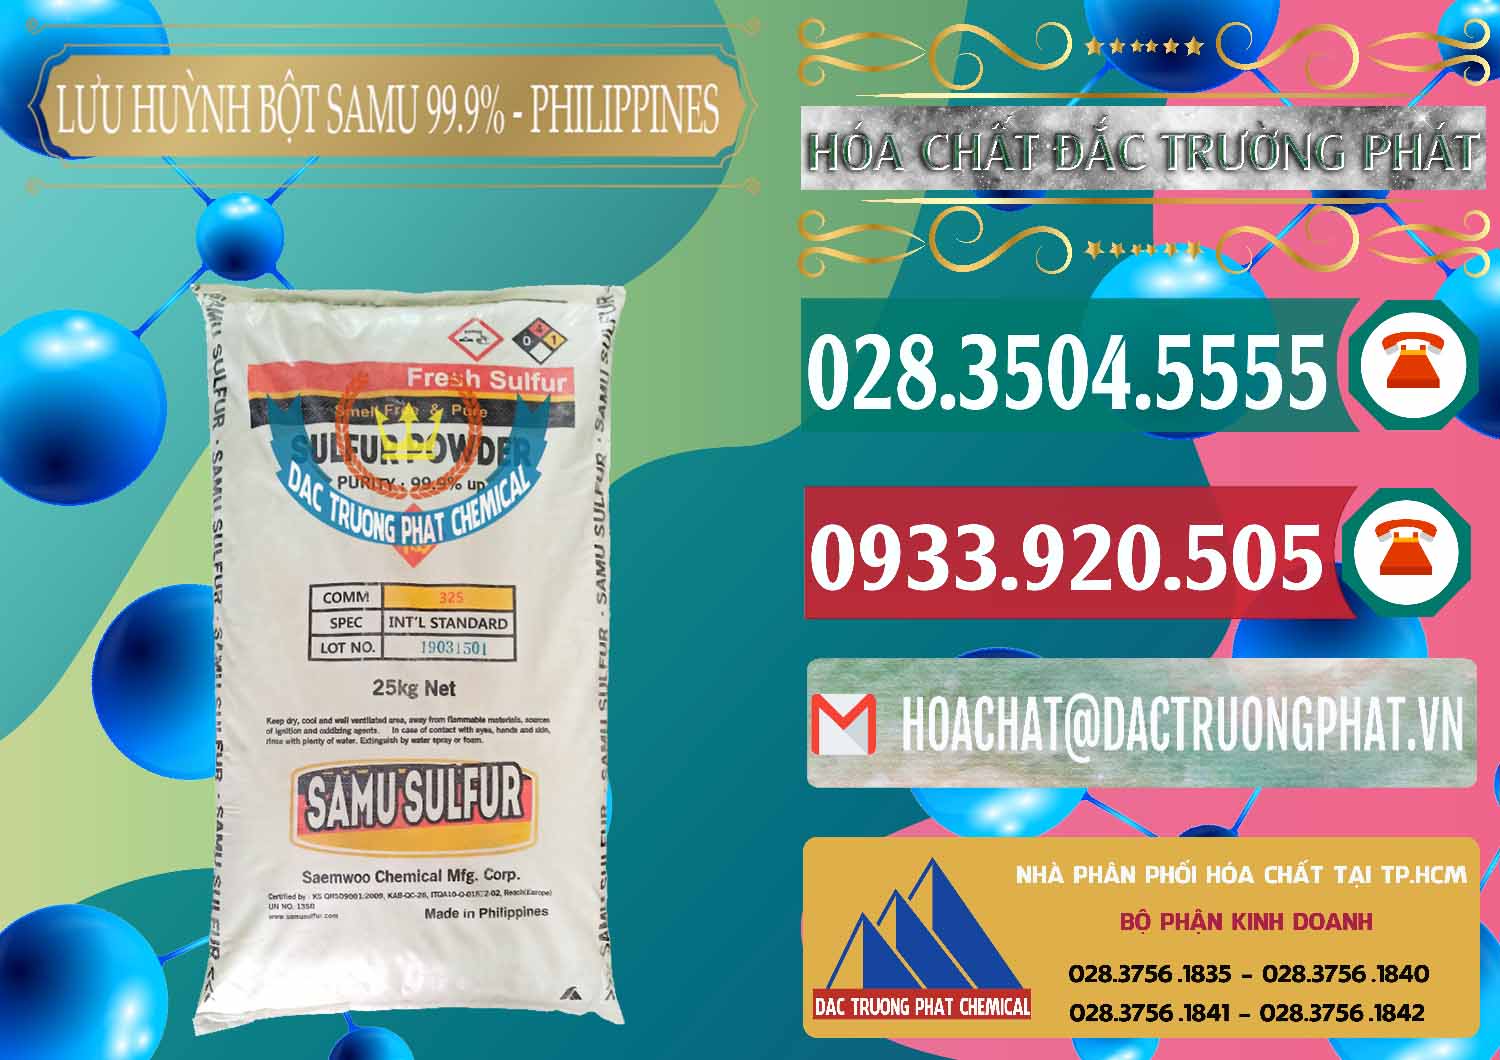 Cty chuyên cung ứng _ bán Lưu huỳnh Bột - Sulfur Powder Samu Philippines - 0201 - Công ty bán ( phân phối ) hóa chất tại TP.HCM - muabanhoachat.vn